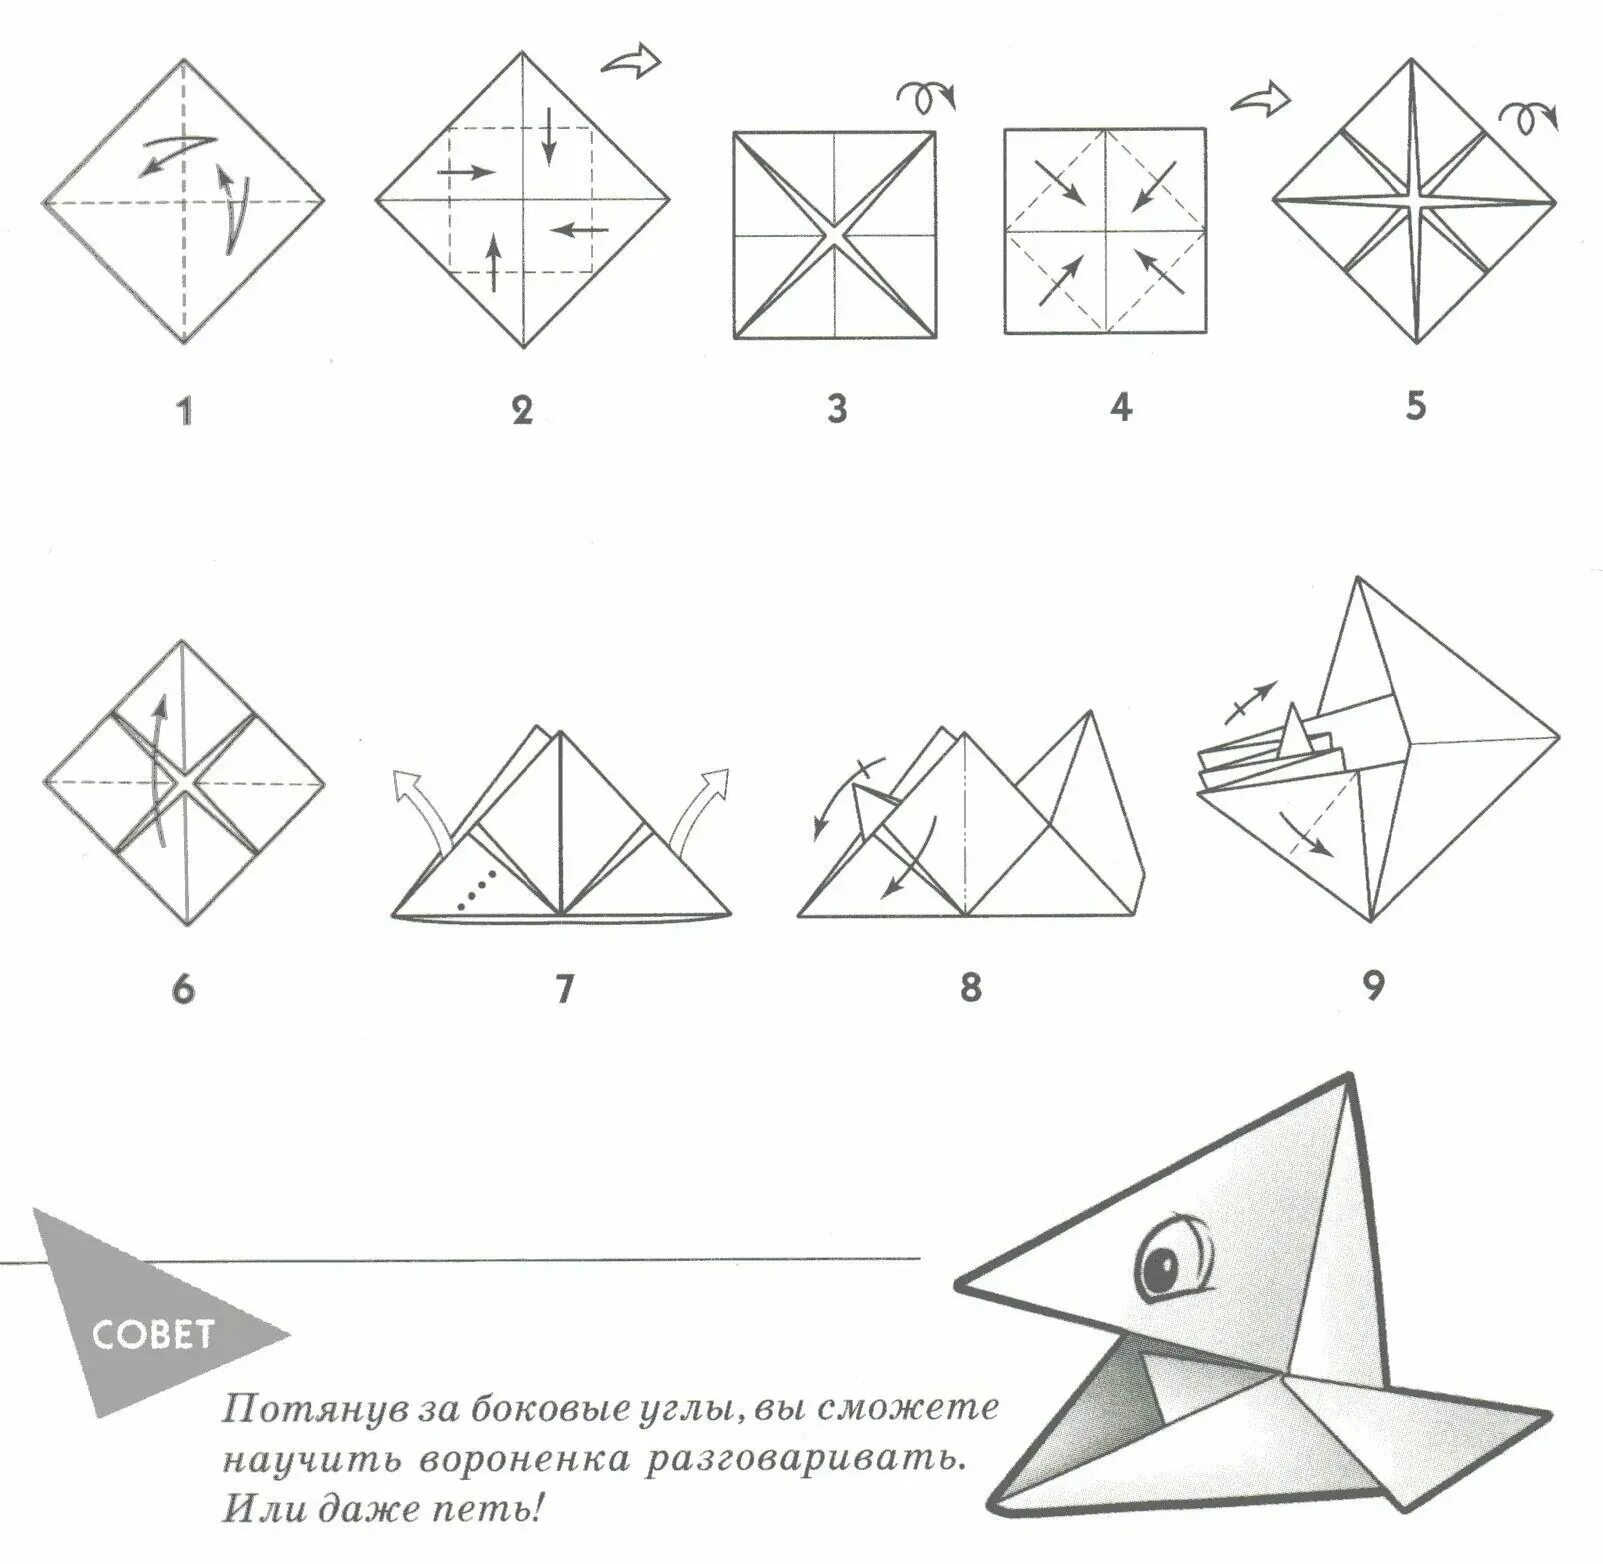 Поделка оригами из бумаги для начинающих пошагово. Оригами из бумаги для начинающих схемы пошагово. Поделки из бумаги схема складывания. Оригами из бумаги без клея схемы. Как сделать маленький оригами